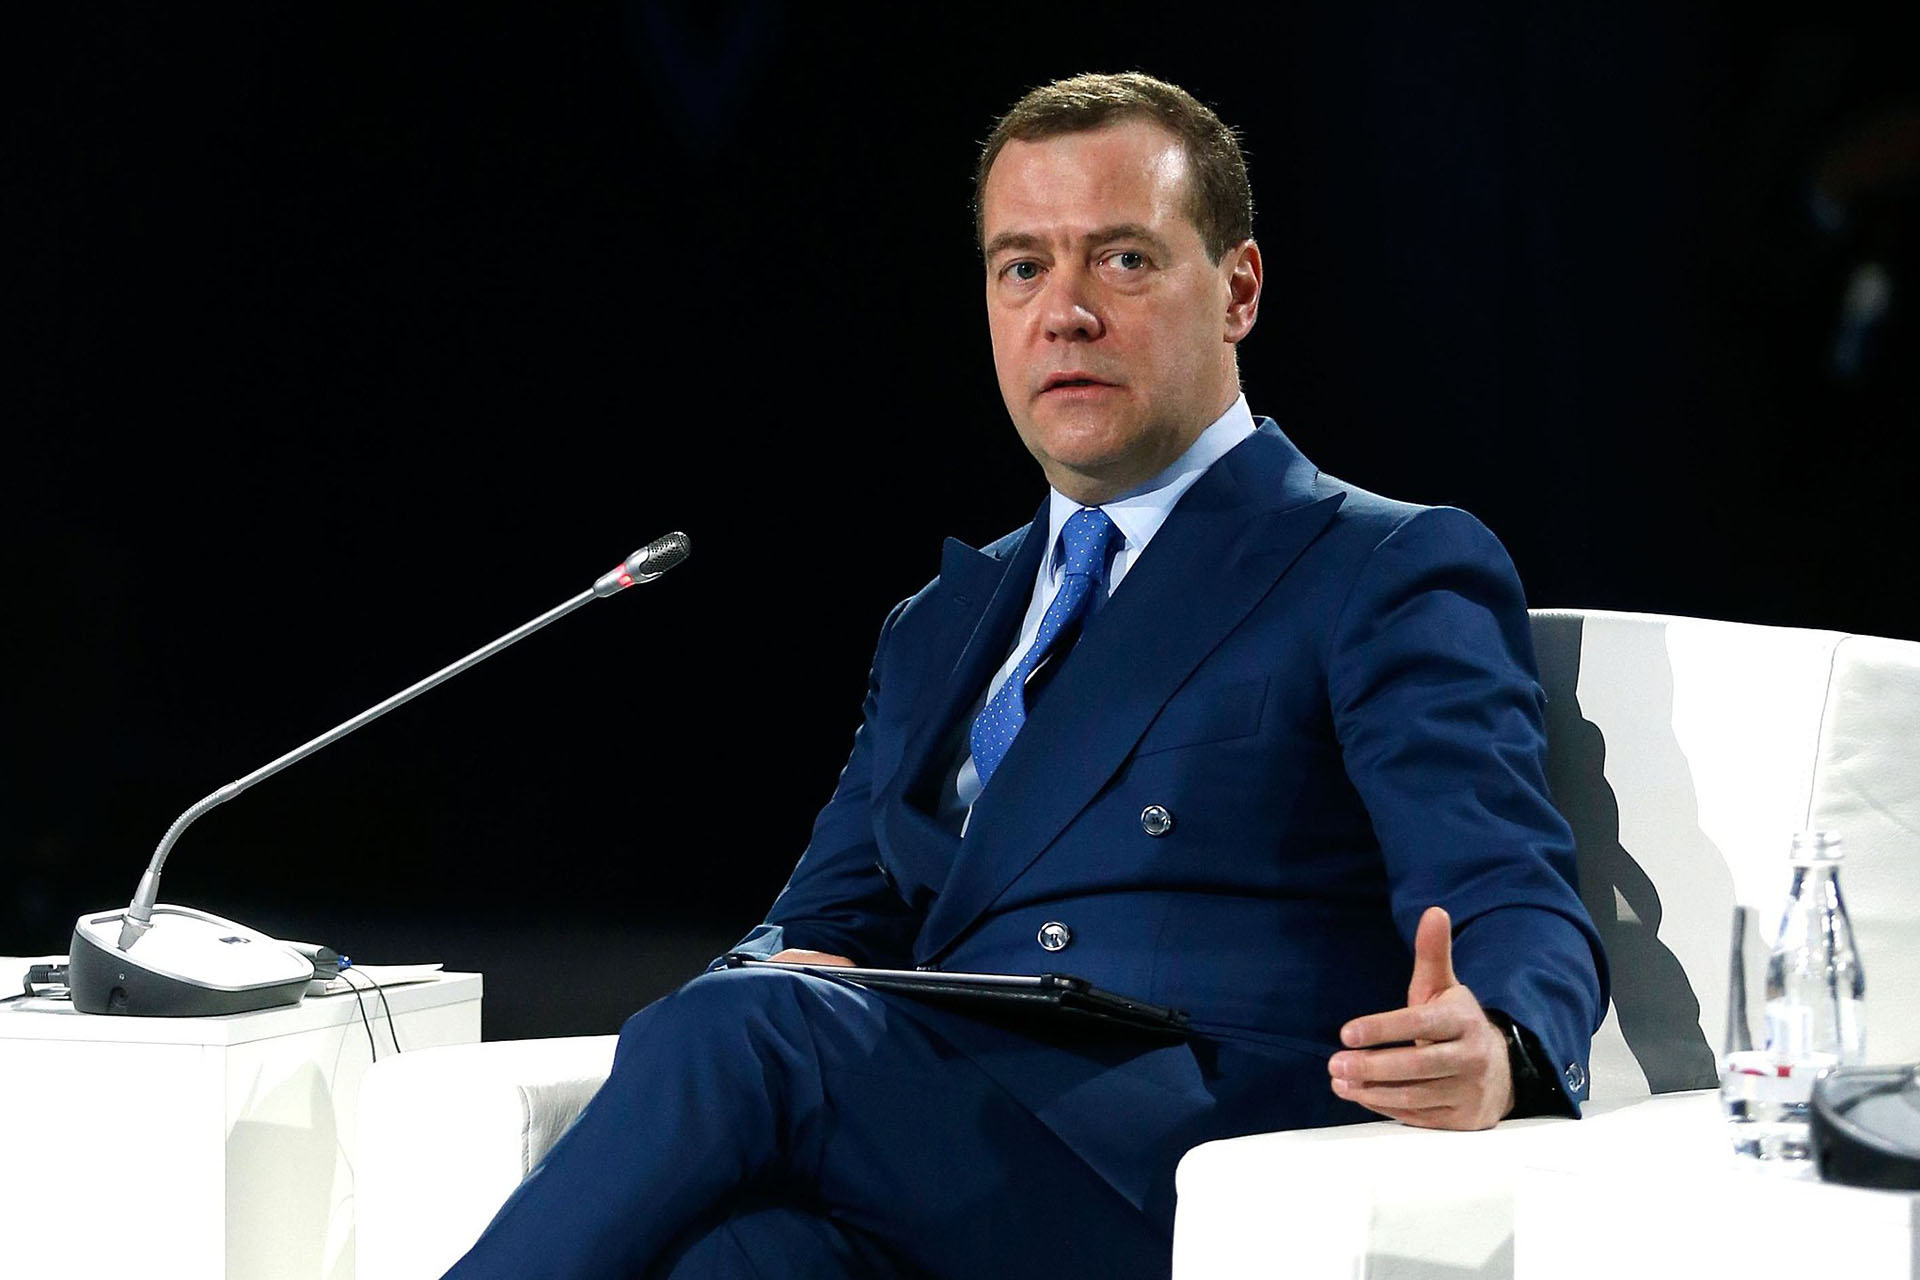 Bild: Government.ru, Dmitry Medvedev (01-02-2019), CC BY 4.0, via Wikimedia Commons (Bildgröße geändert)